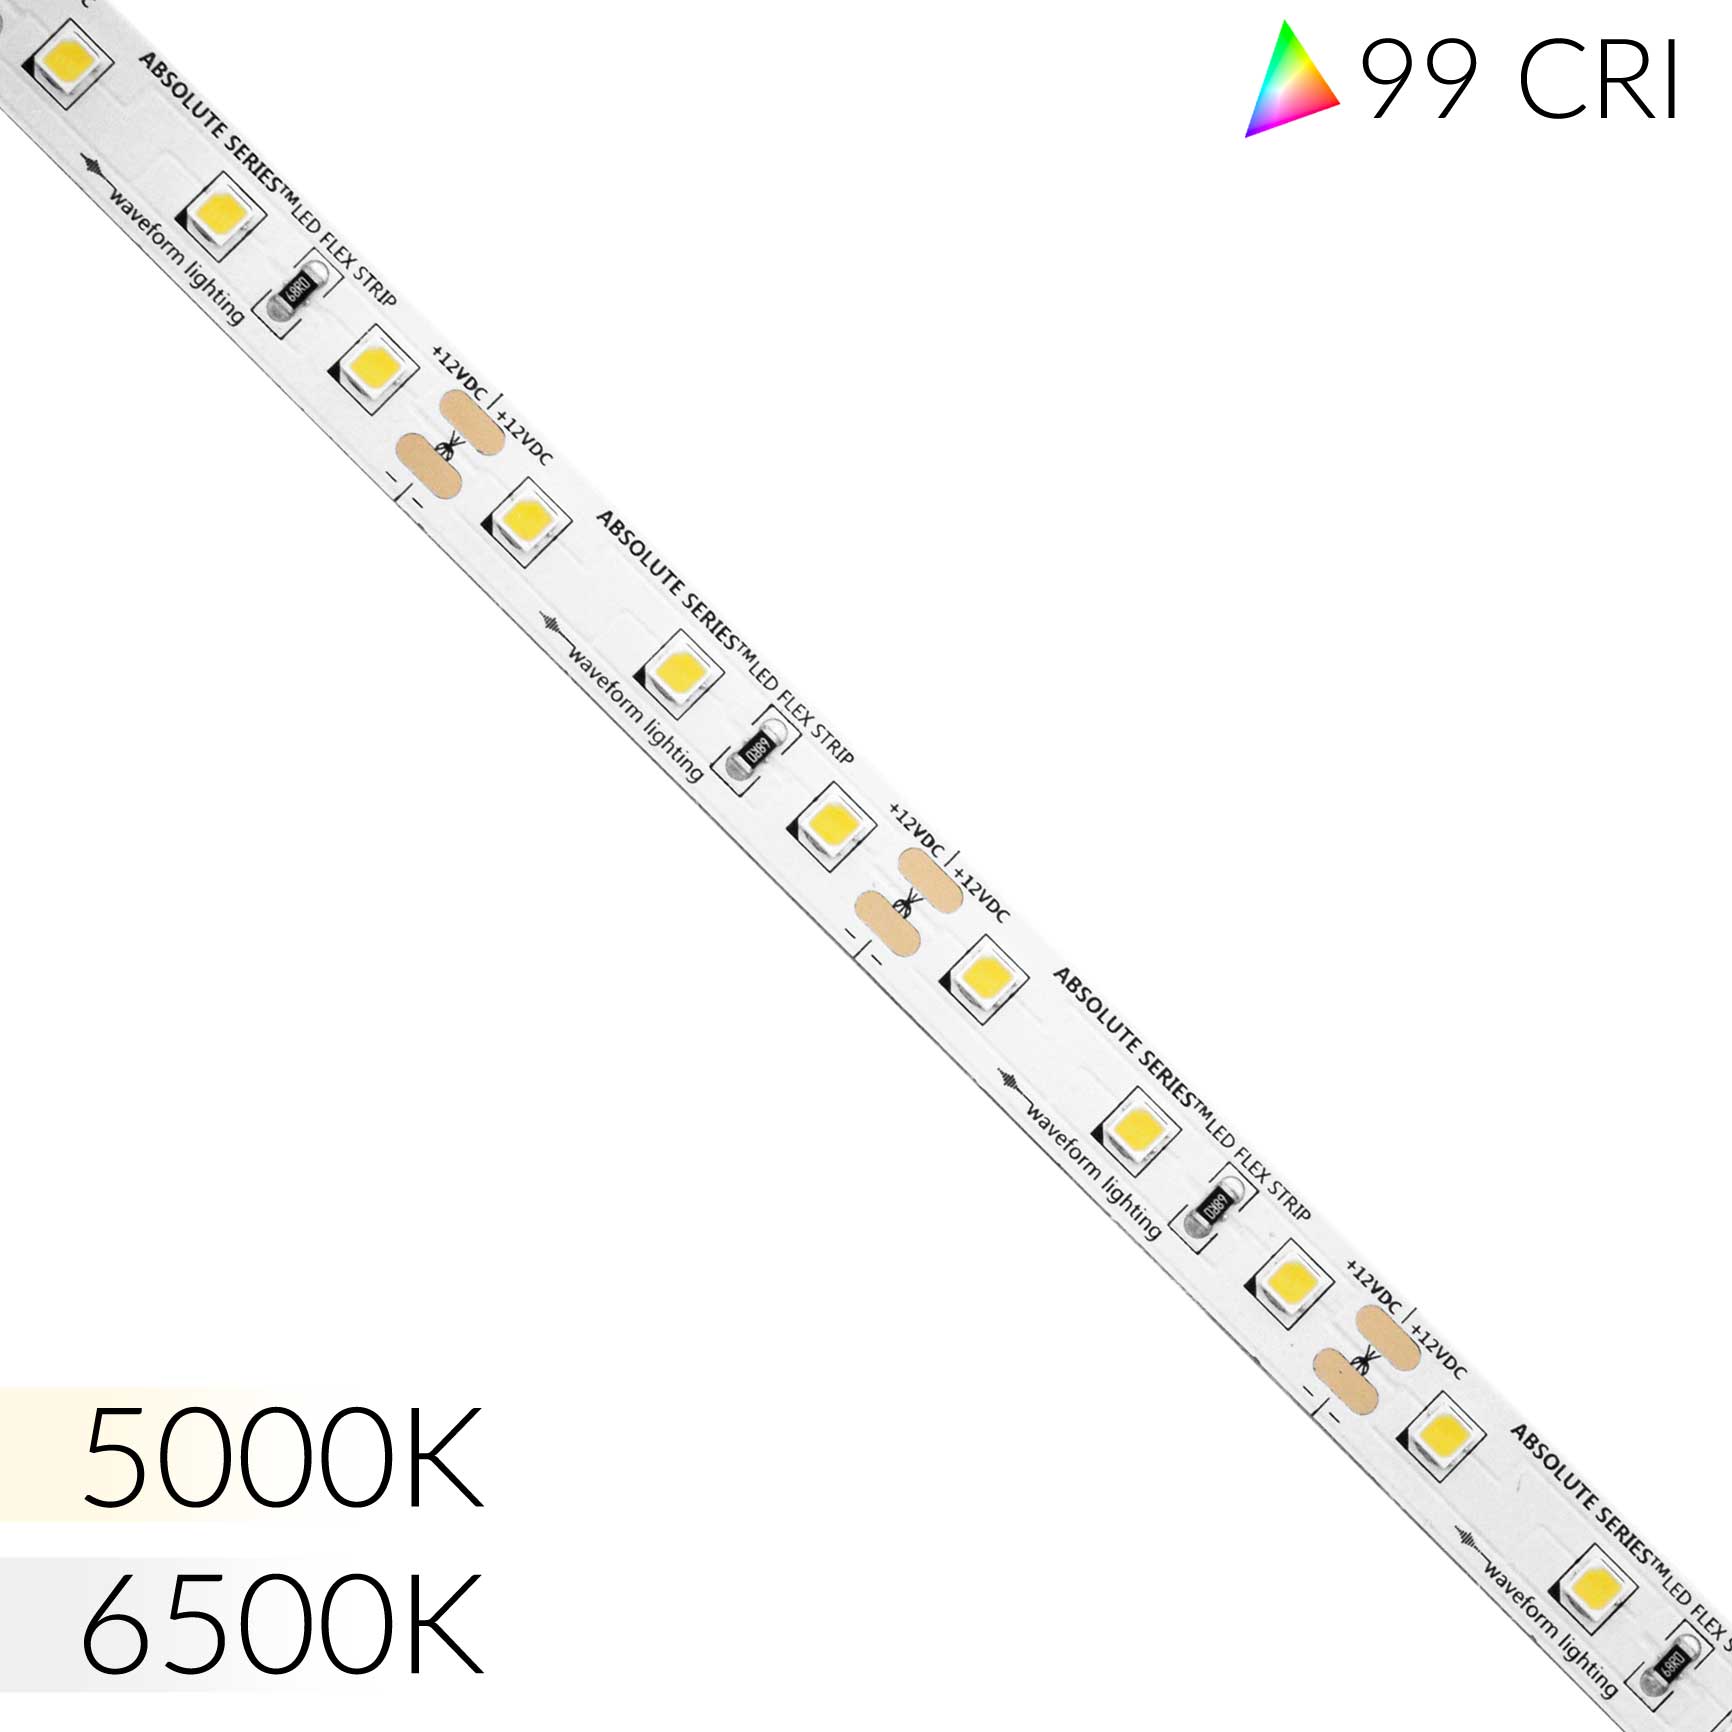 jævnt Fantastisk Ved daggry ABSOLUTE SERIES™ LED Flexible Strip - 99 CRI - 16 ft / 5 m Reel – Waveform  Lighting